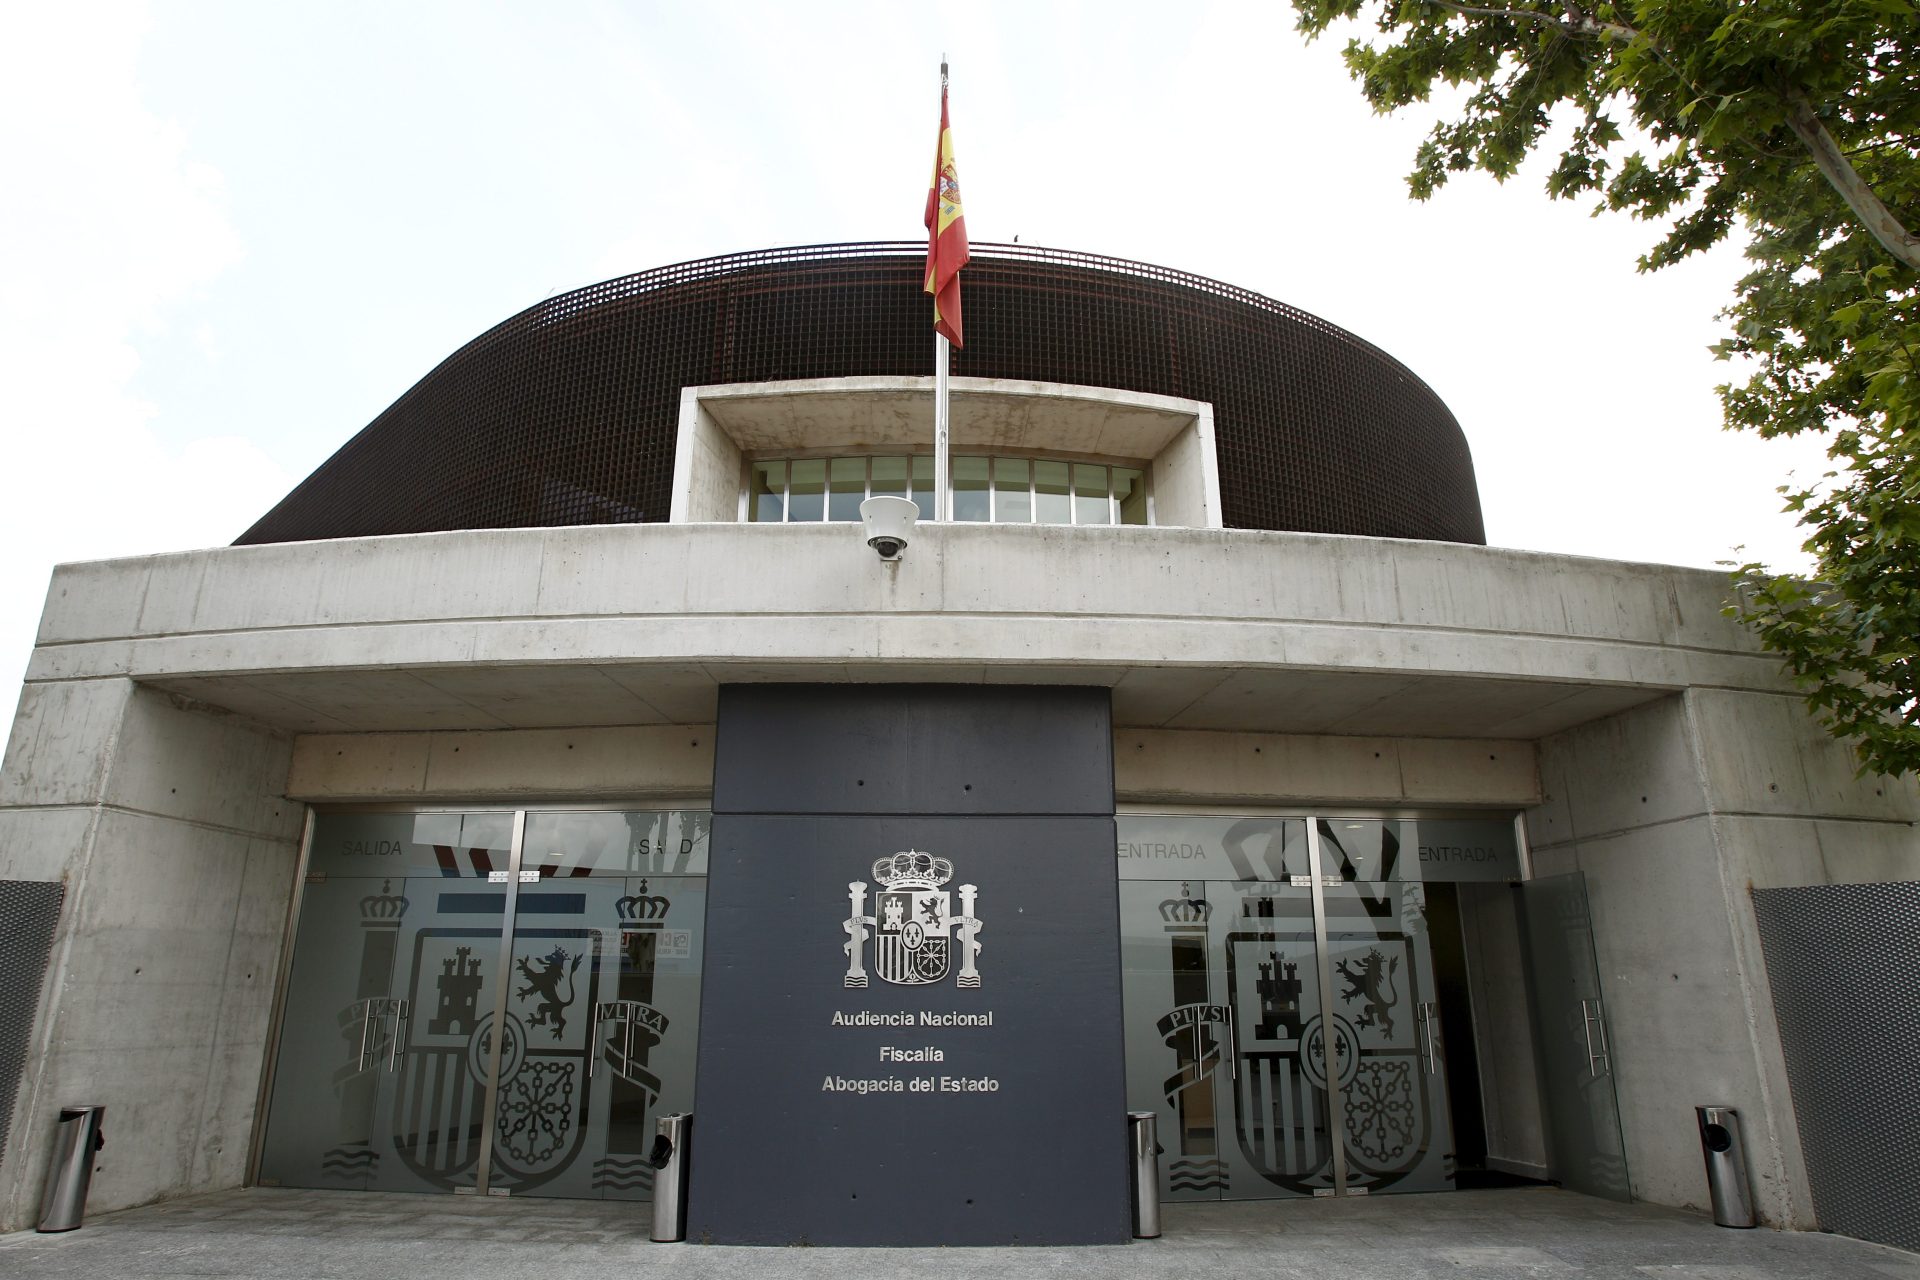 Fachada de la sede de la Audiencia Nacional-Fiscalia y Abogacía del Estado en San Fernando de Henares.